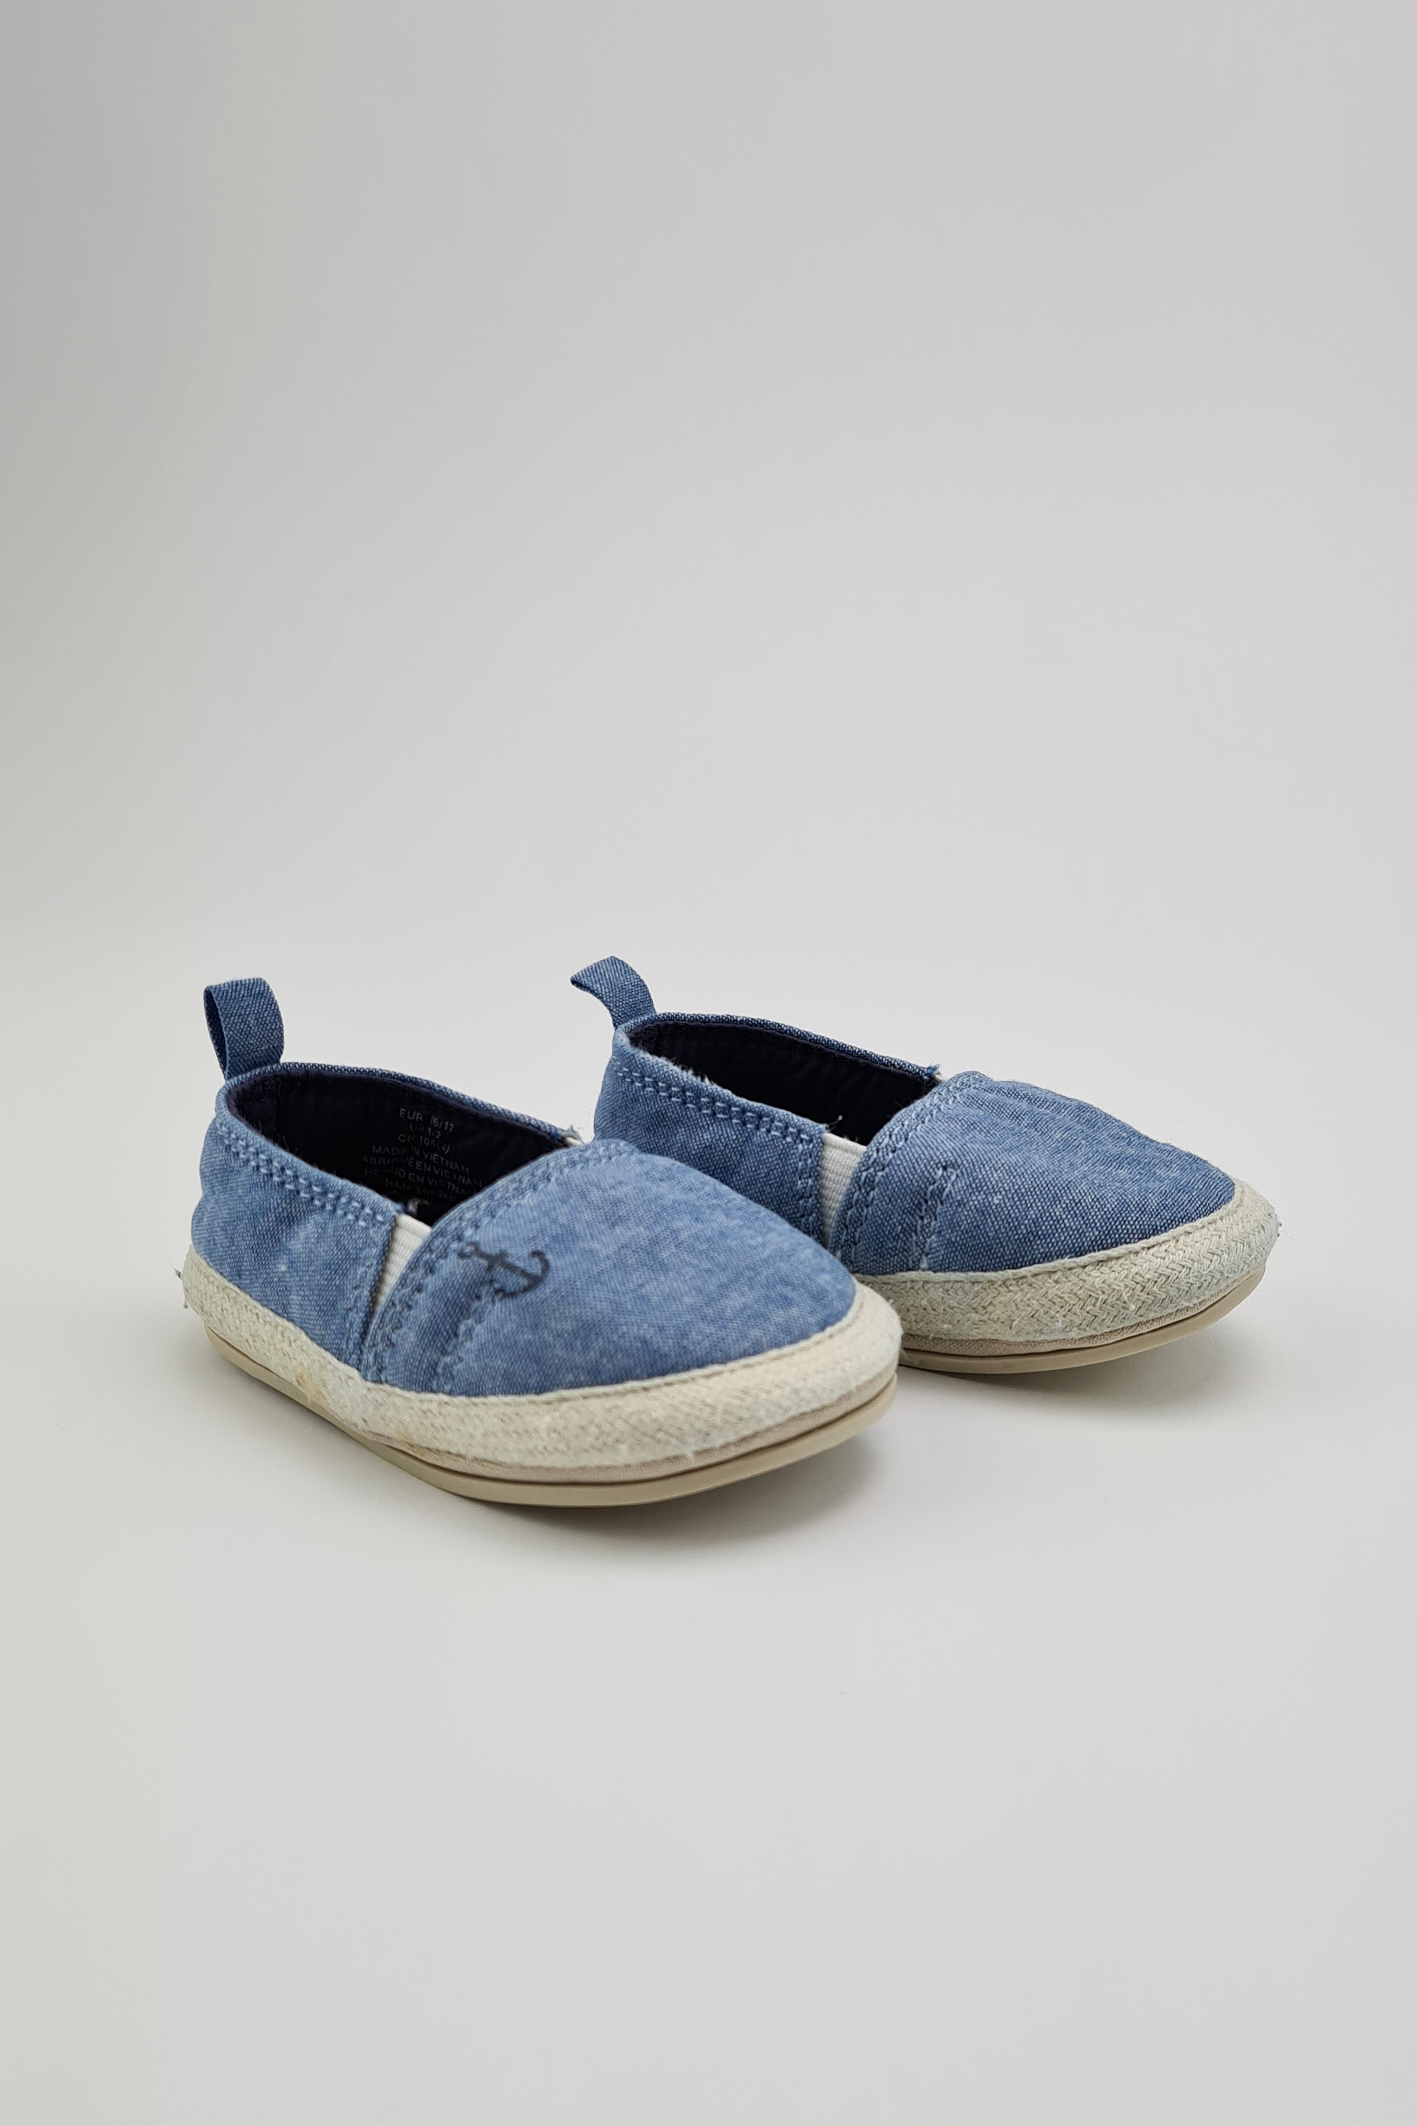 0-6m - Blue Slip-on Shoes - Precuddled.com